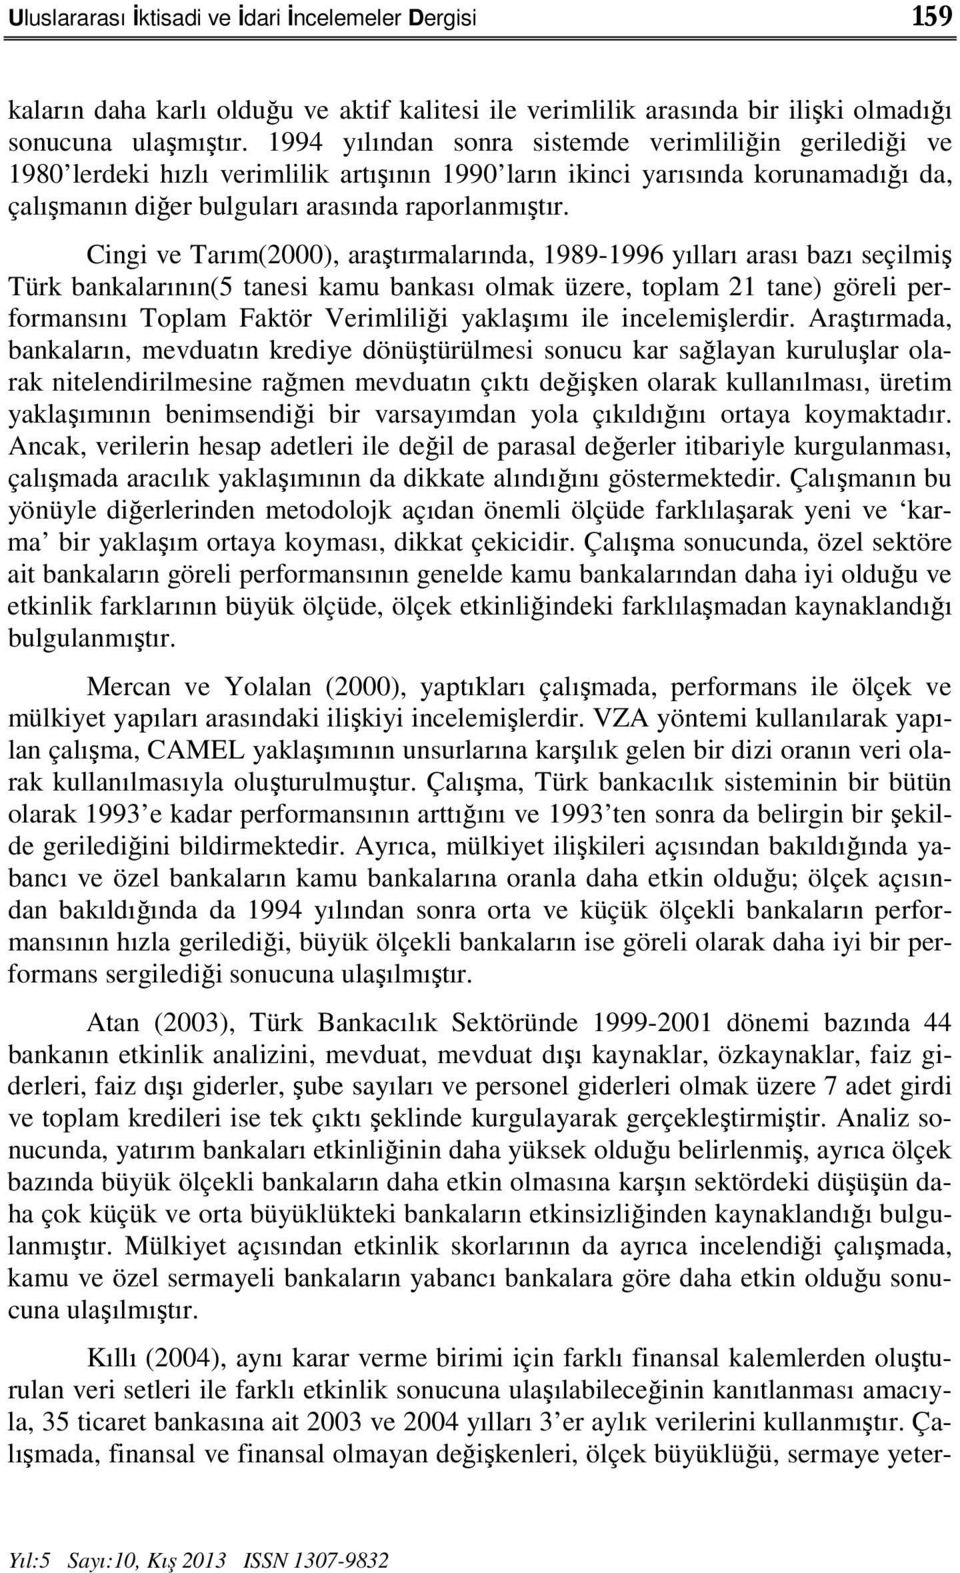 Cingi ve Tarım(2000), araştırmalarında, 1989-1996 yılları arası bazı seçilmiş Türk bankalarının(5 tanesi kamu bankası olmak üzere, toplam 21 tane) göreli performansını Toplam Faktör Verimliliği